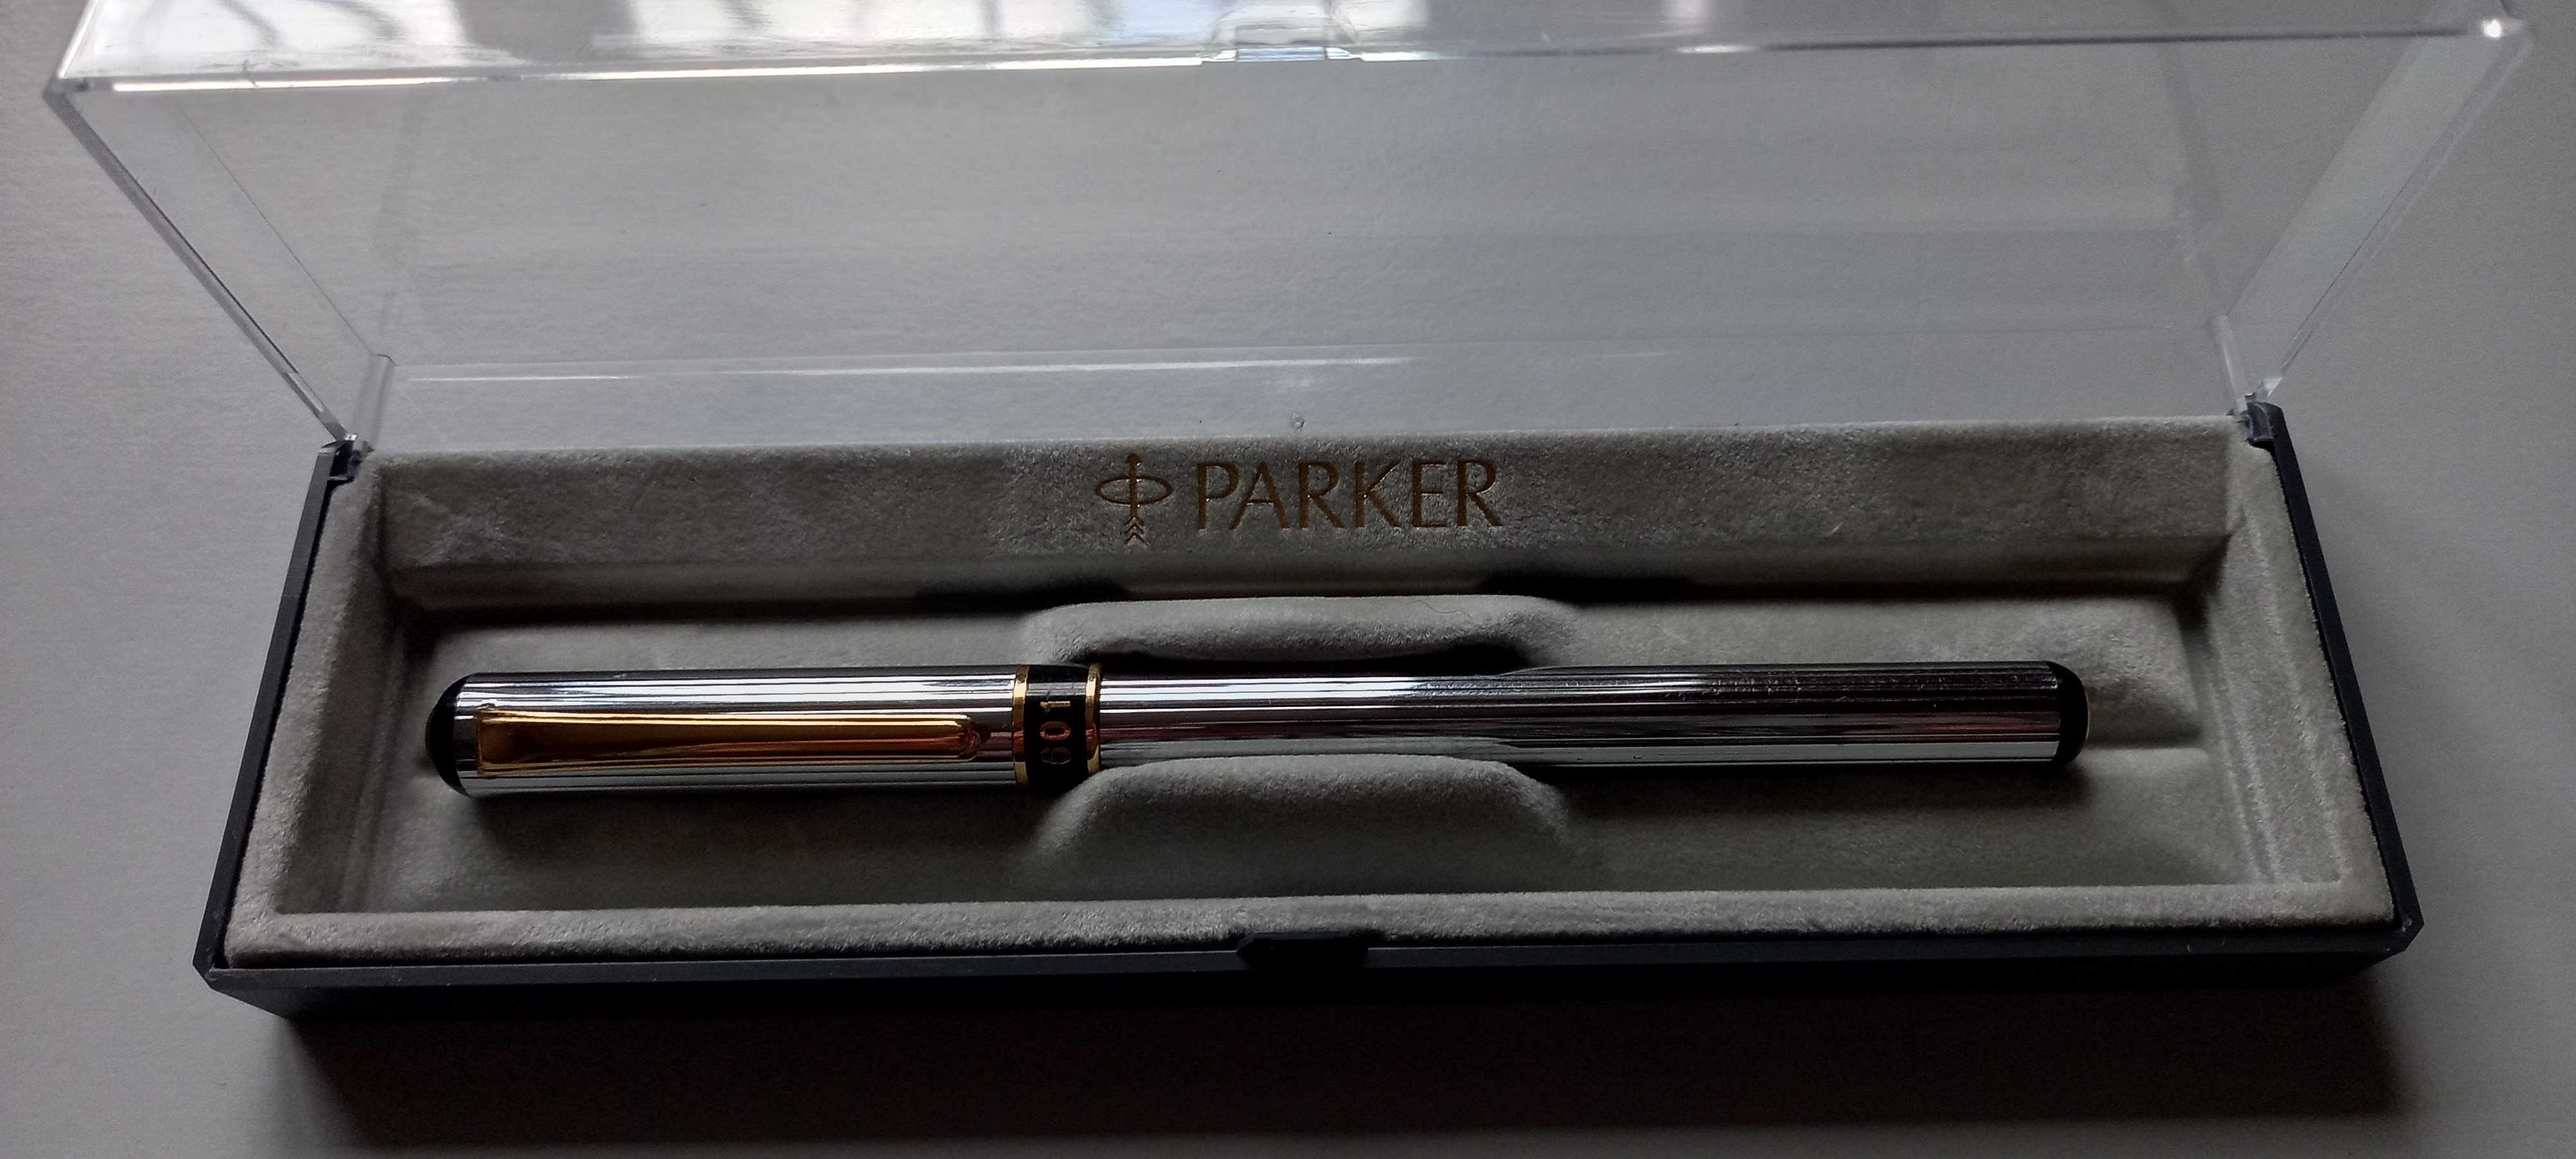 Продам на подарок фирменые ручки Parcer